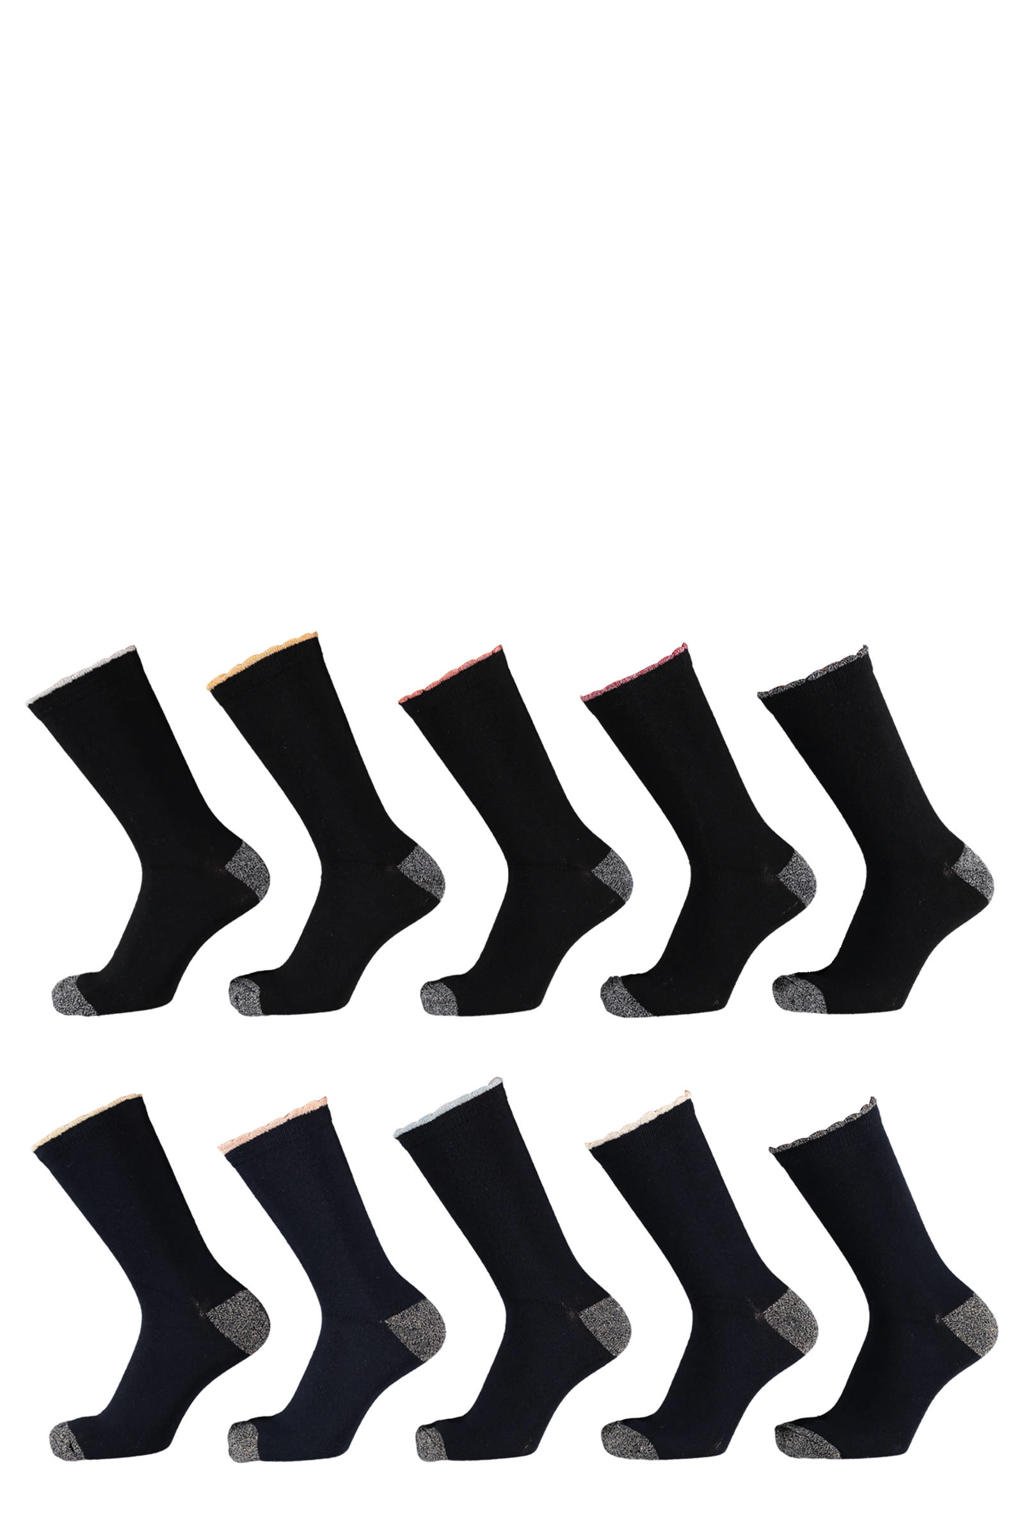 Apollo sokken - set van 10 zwart/donkerblauw